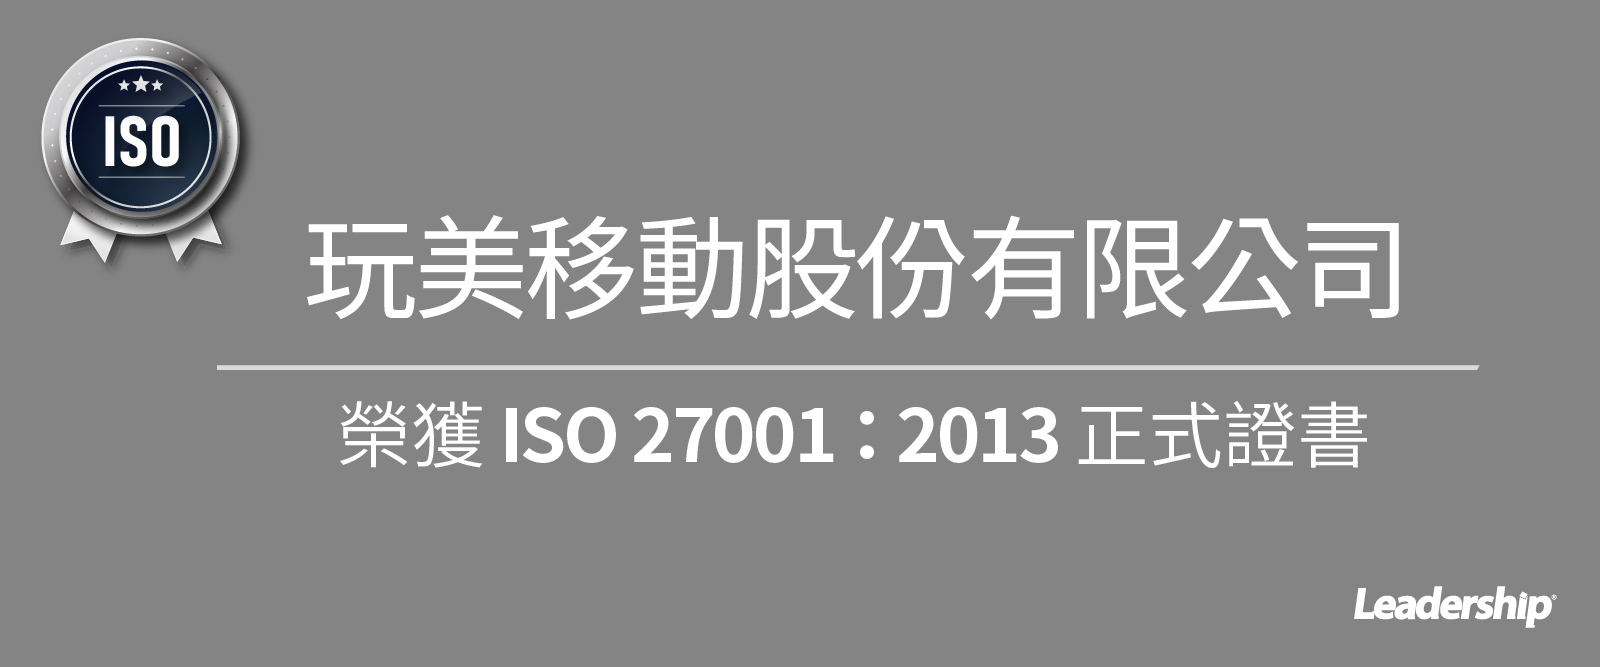 玩美移動股份有限公司榮獲 ISO 27001：2013 正式證書